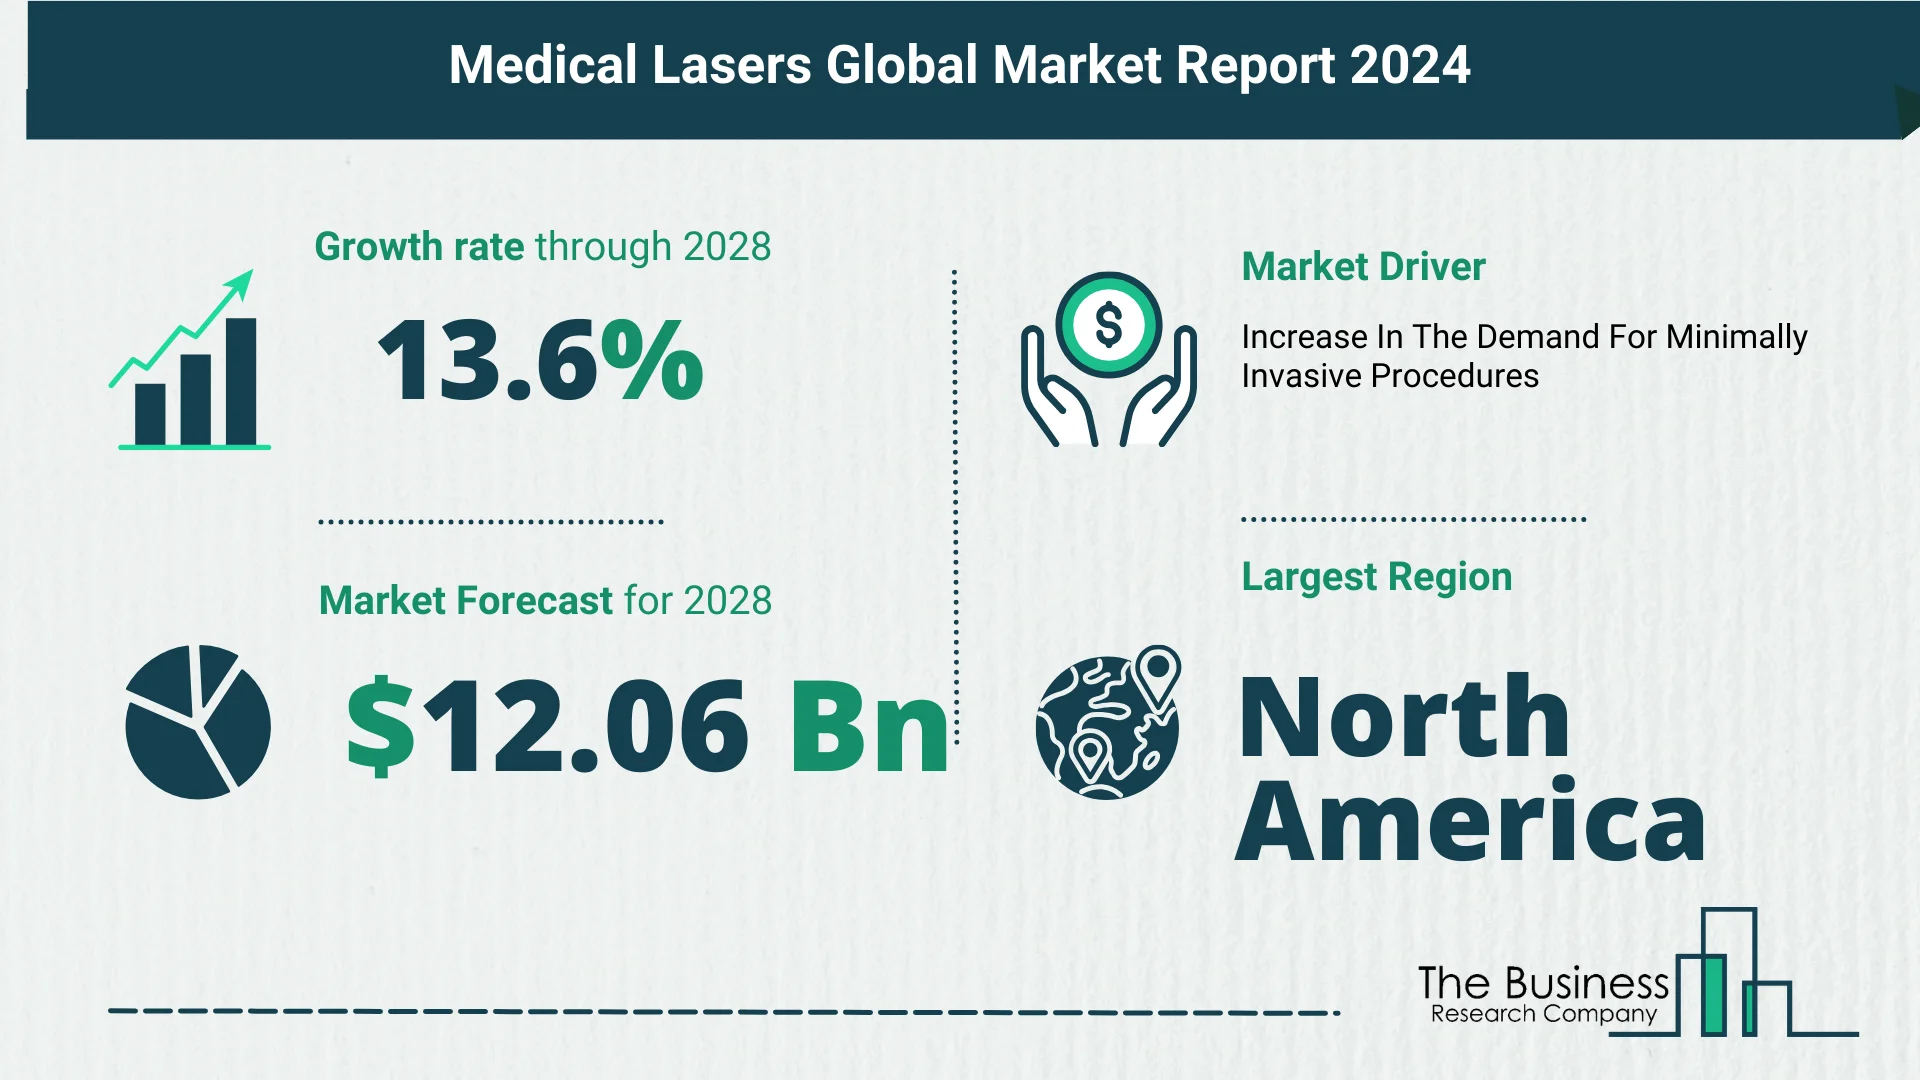 Global Medical Lasers Market Size